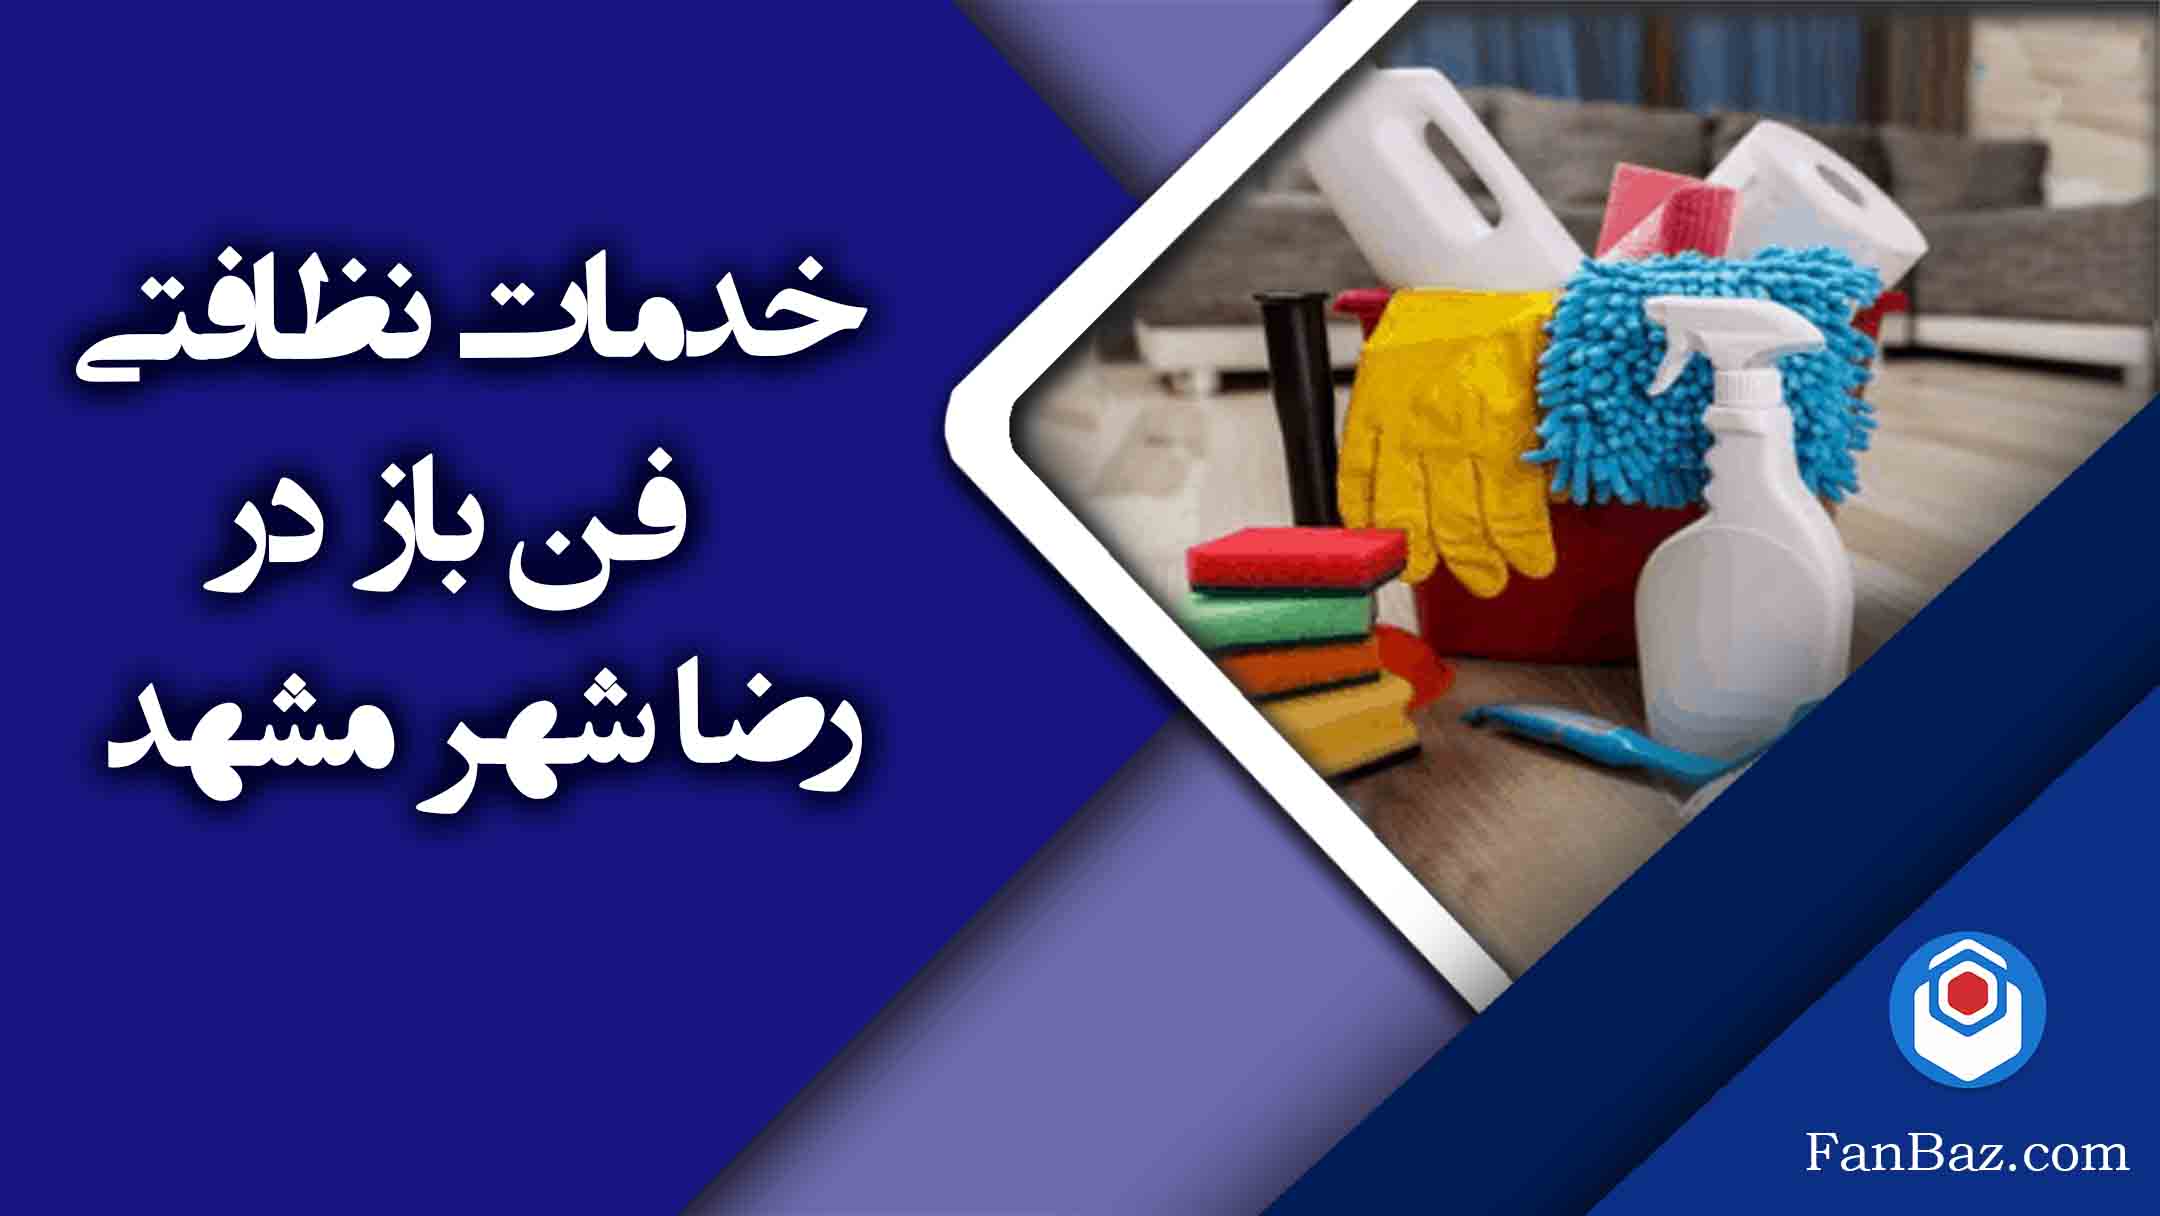 خدمات نظافتی فن باز در رضاشهر مشهد